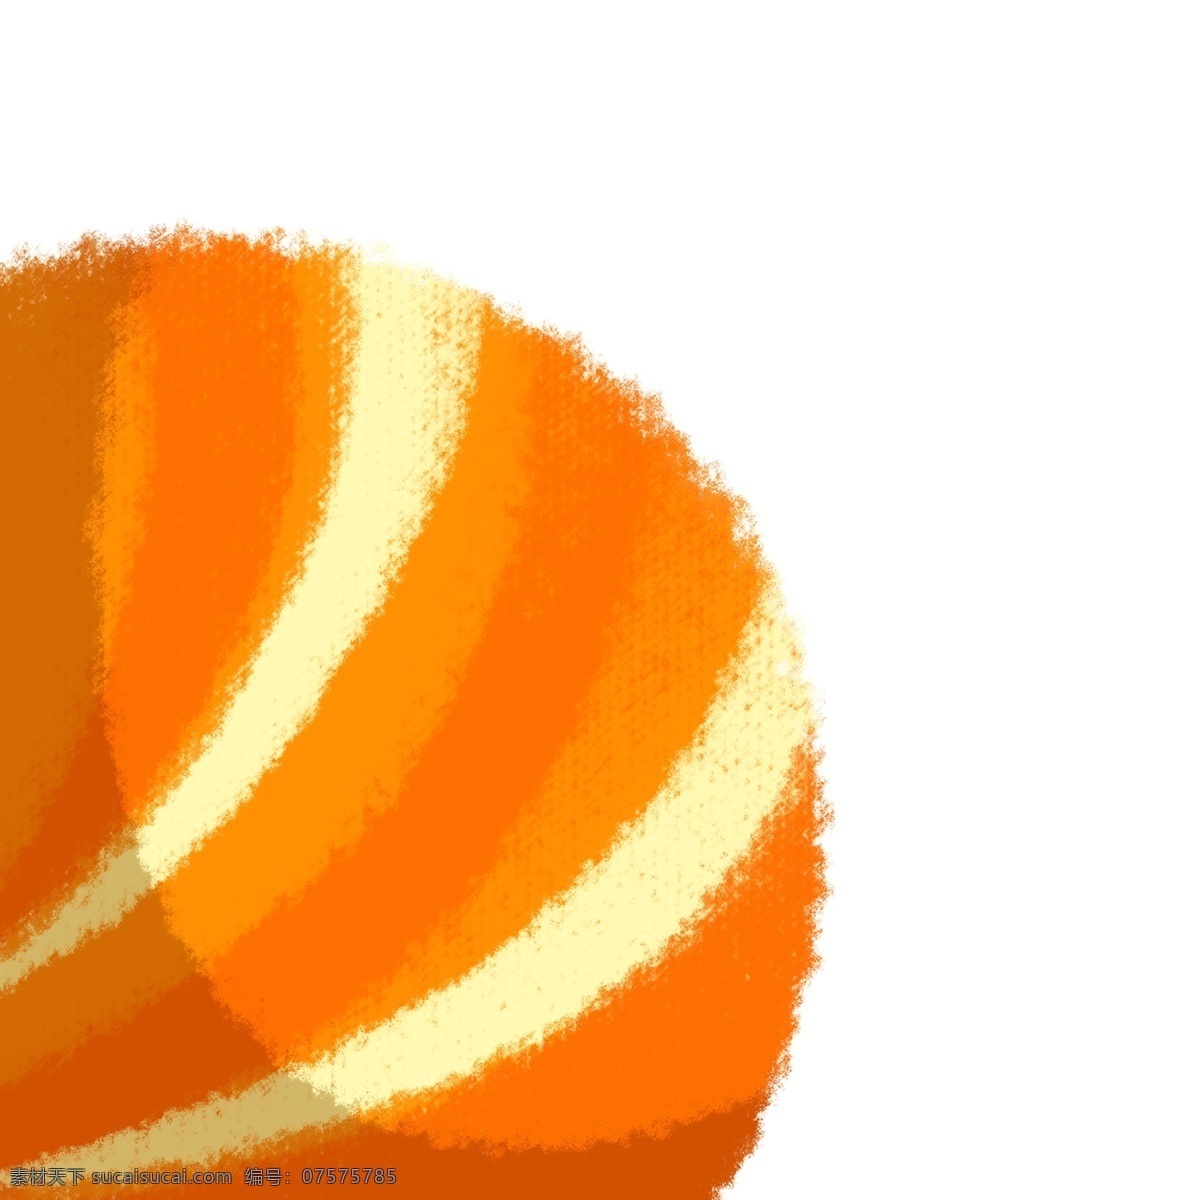 彩球 卡通 条纹彩球 橙色条纹彩球 手绘条纹彩球 卡通条纹彩球 球类 球 圆球 橙黄色球